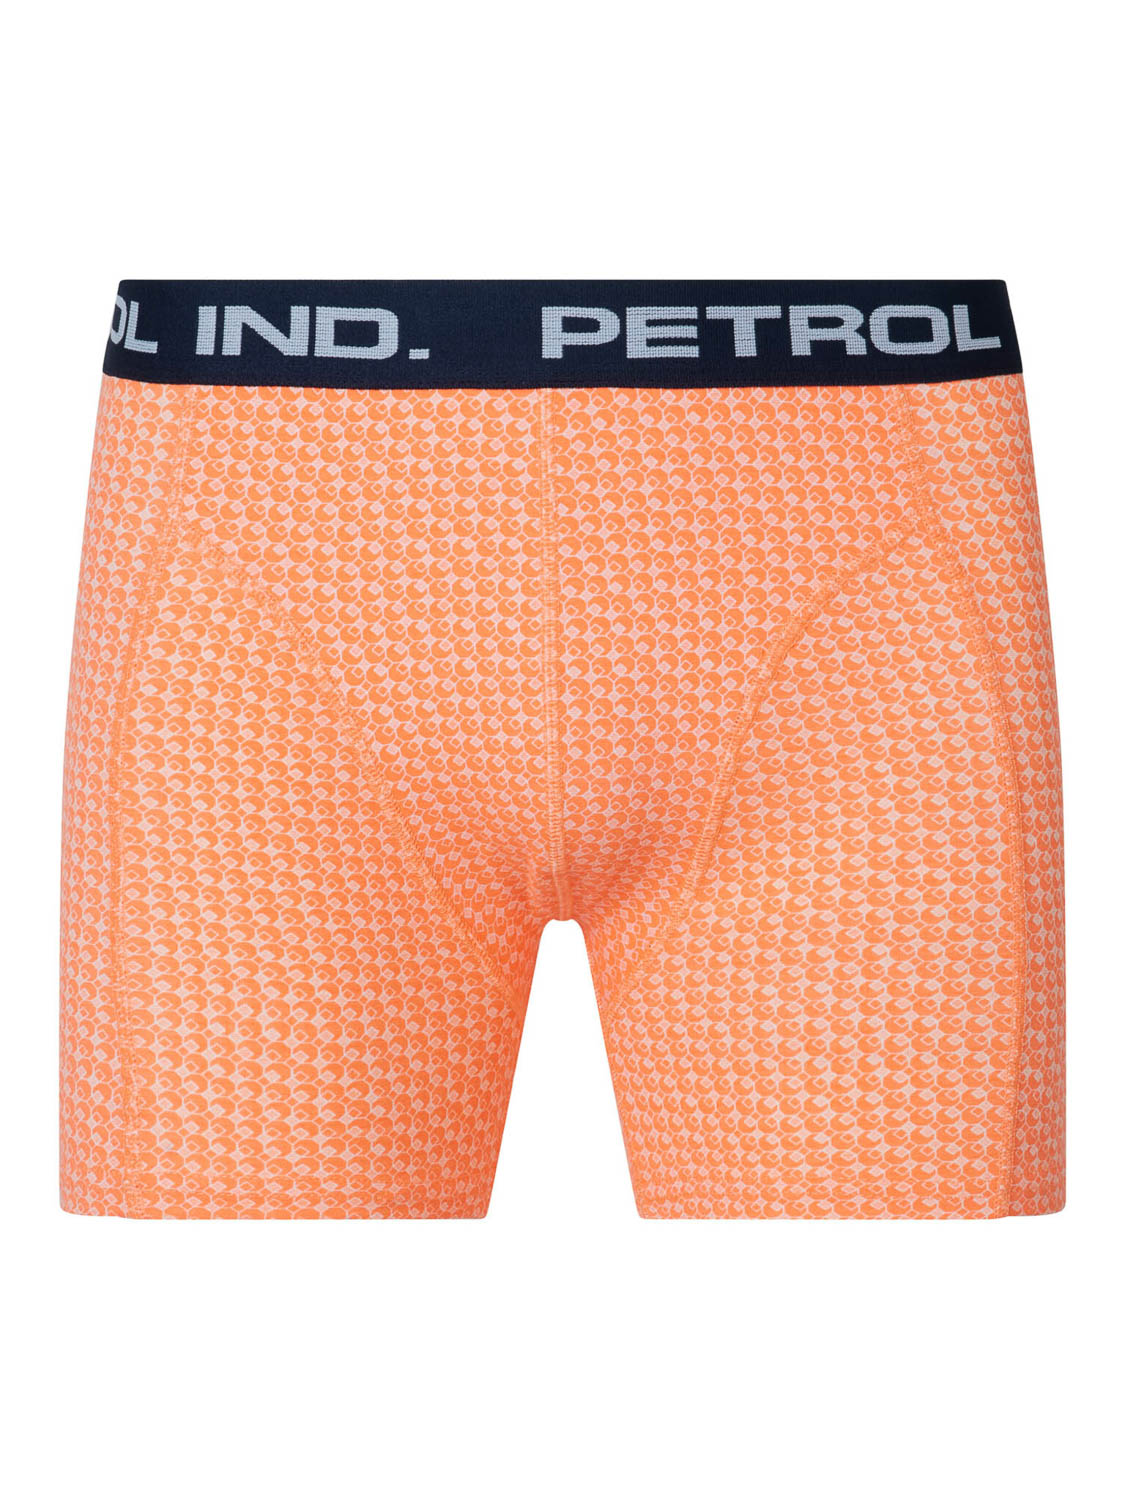 Petrol Industries Men Boxer Shocking Orange | Freewear